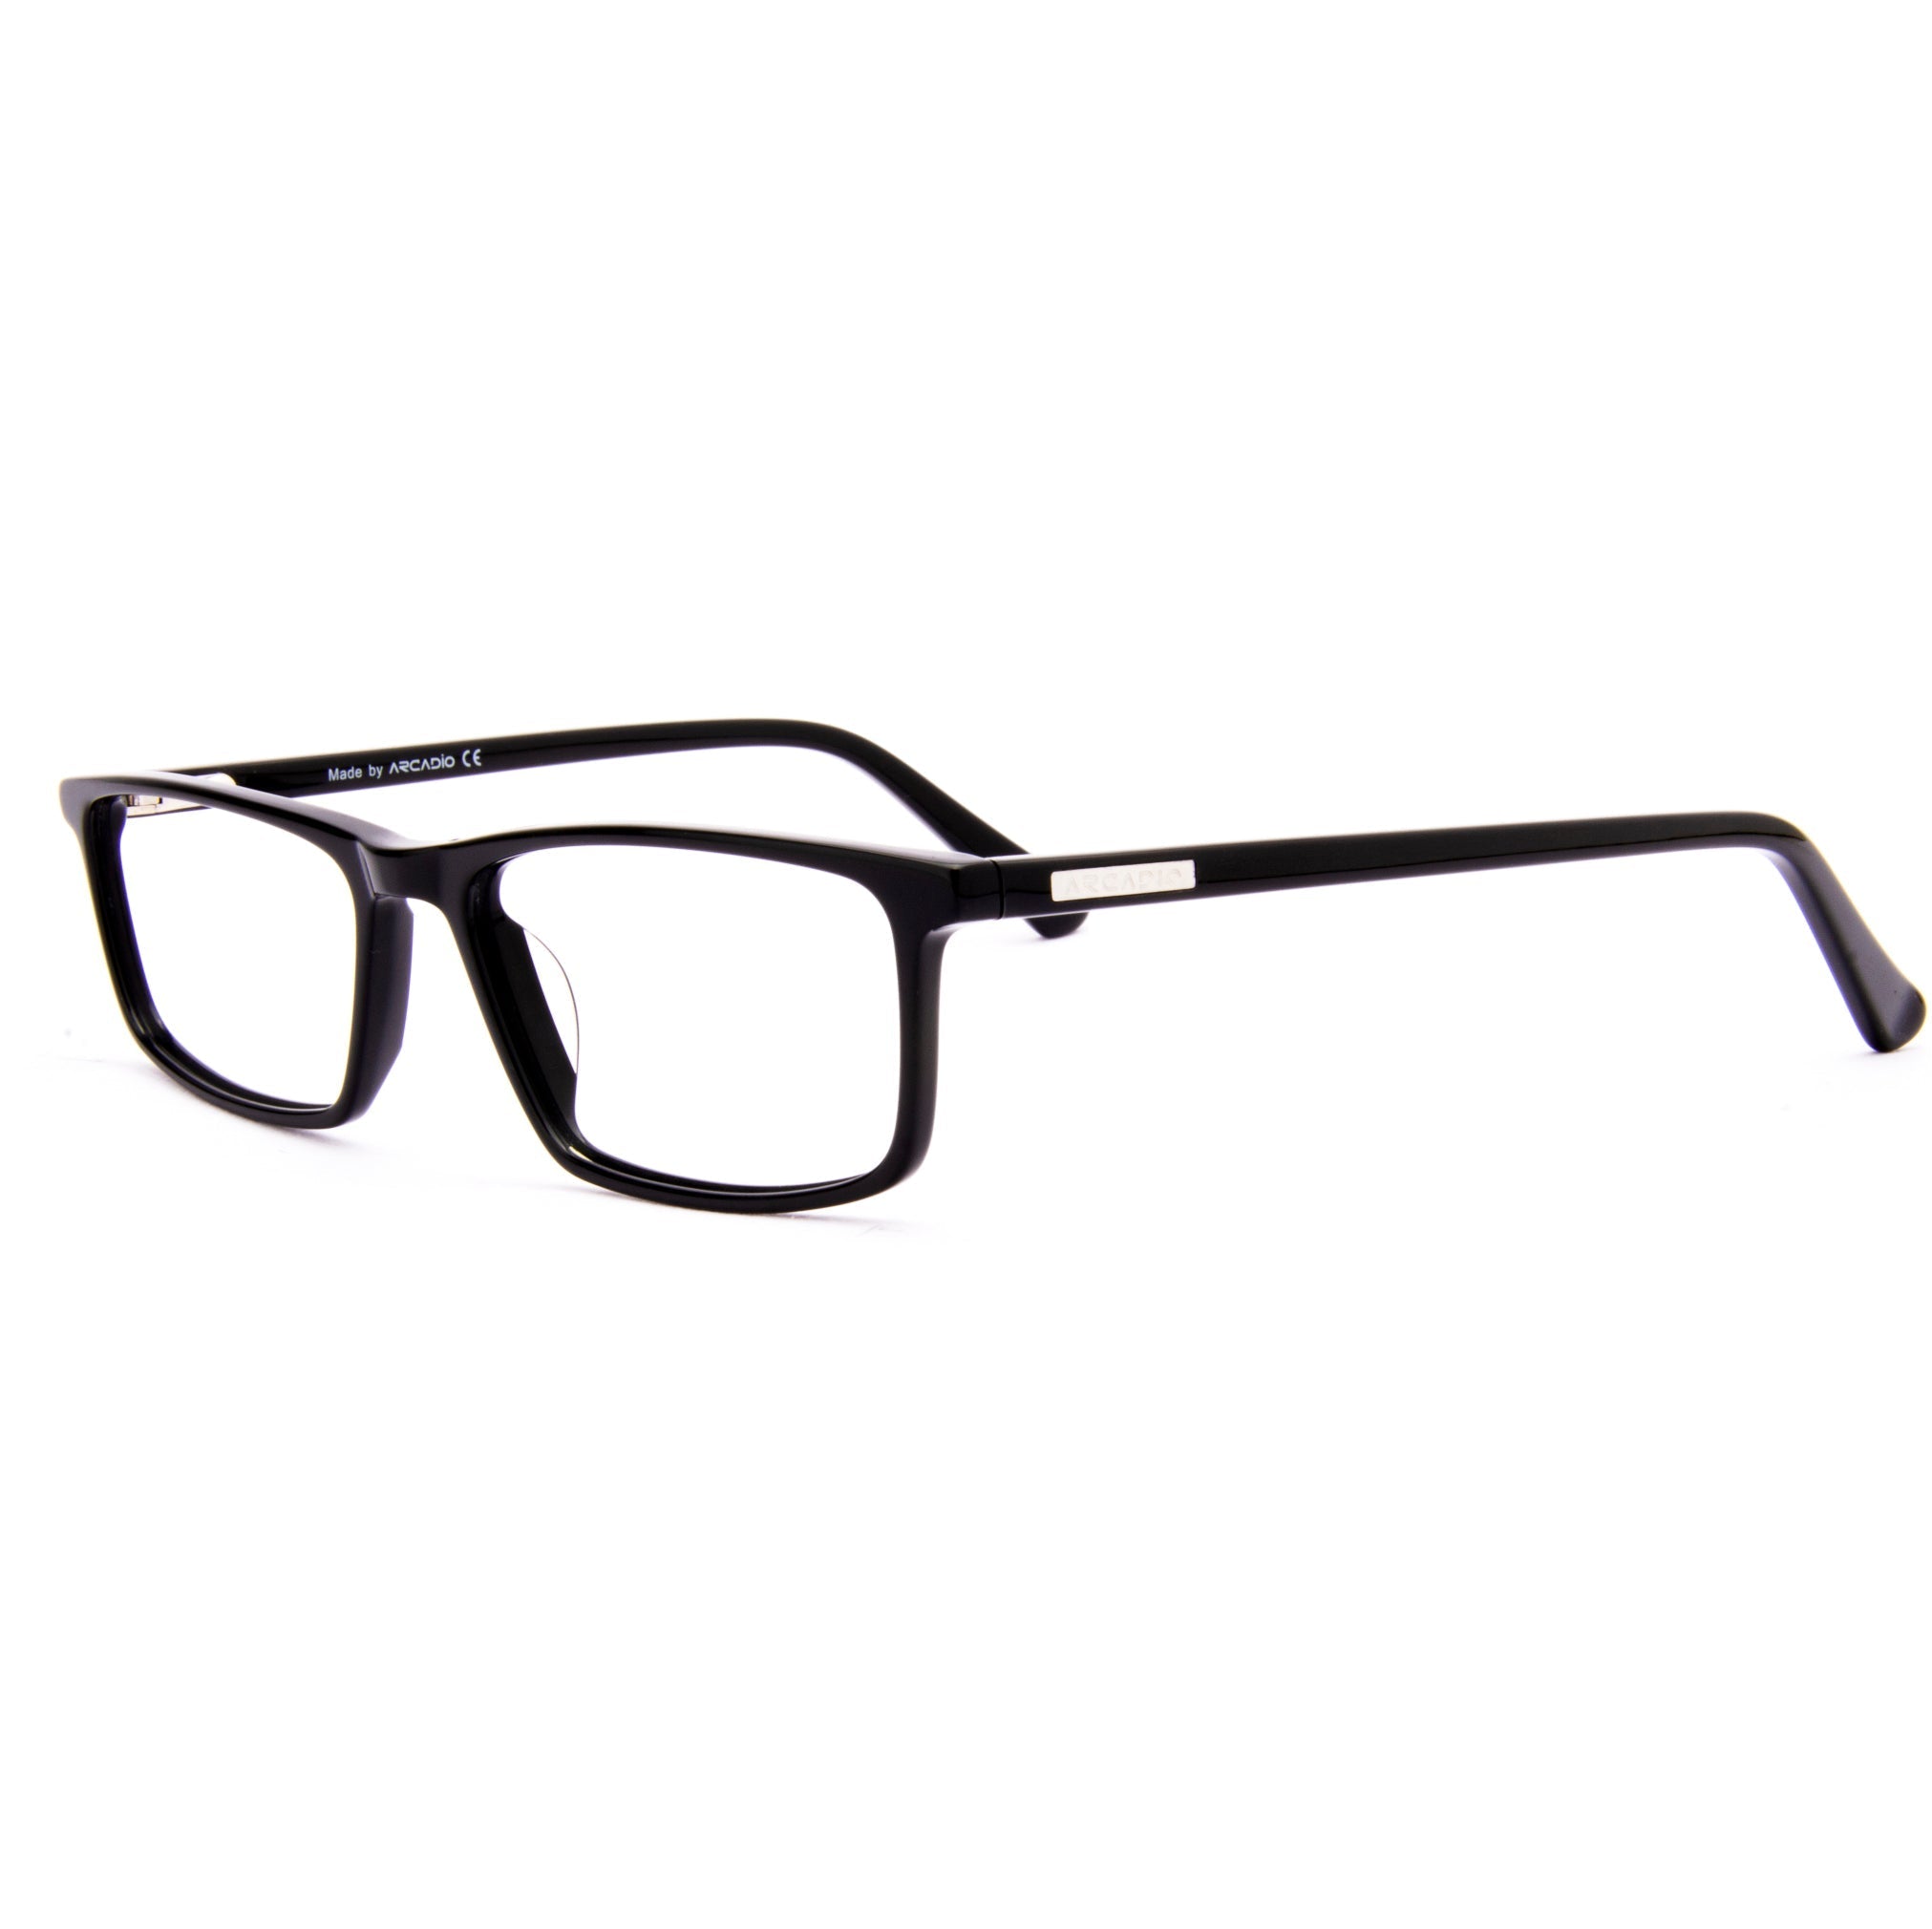 BRAVO Minimalist Eyeglasses for Teens SF4445 ARCADIO